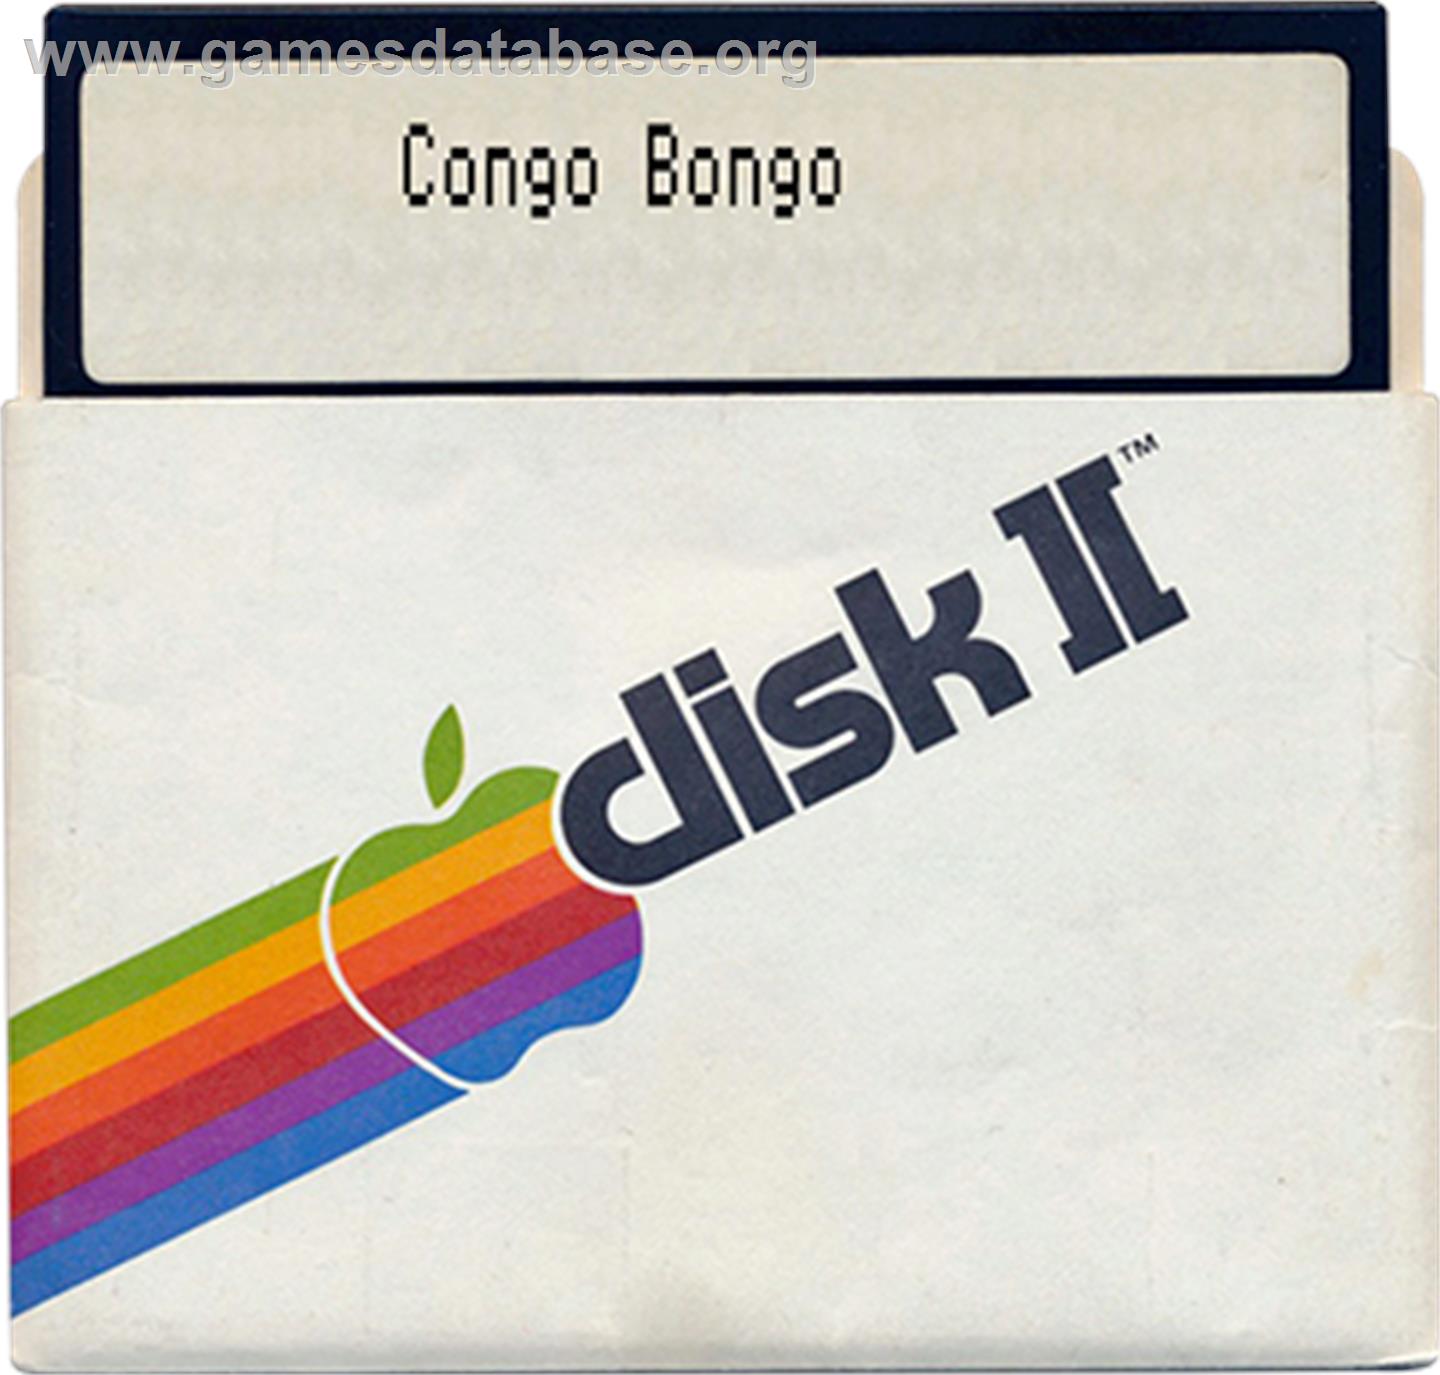 Congo Bongo - Apple II - Artwork - Disc